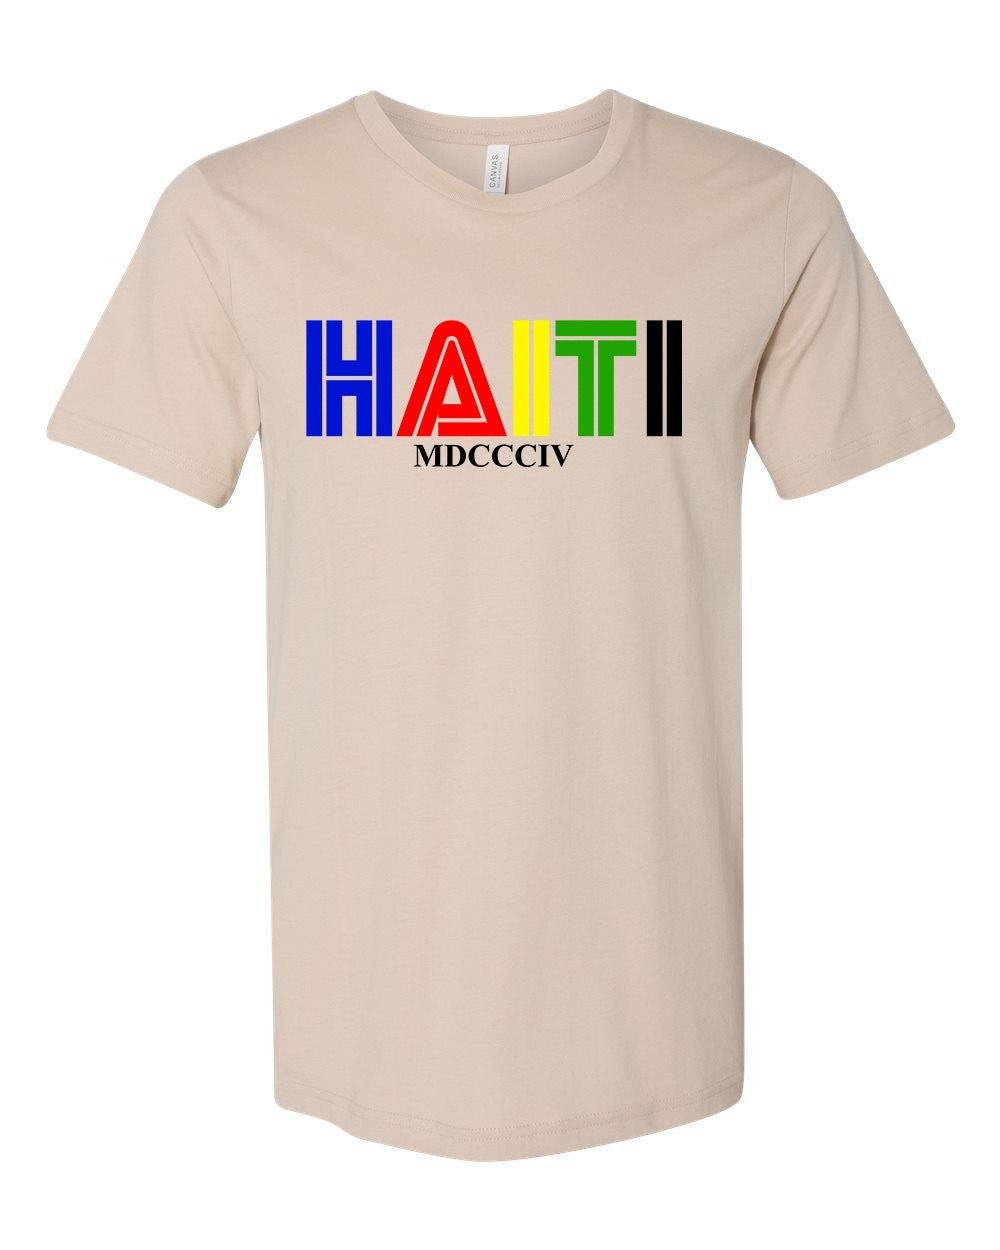 Haiti in color Tan